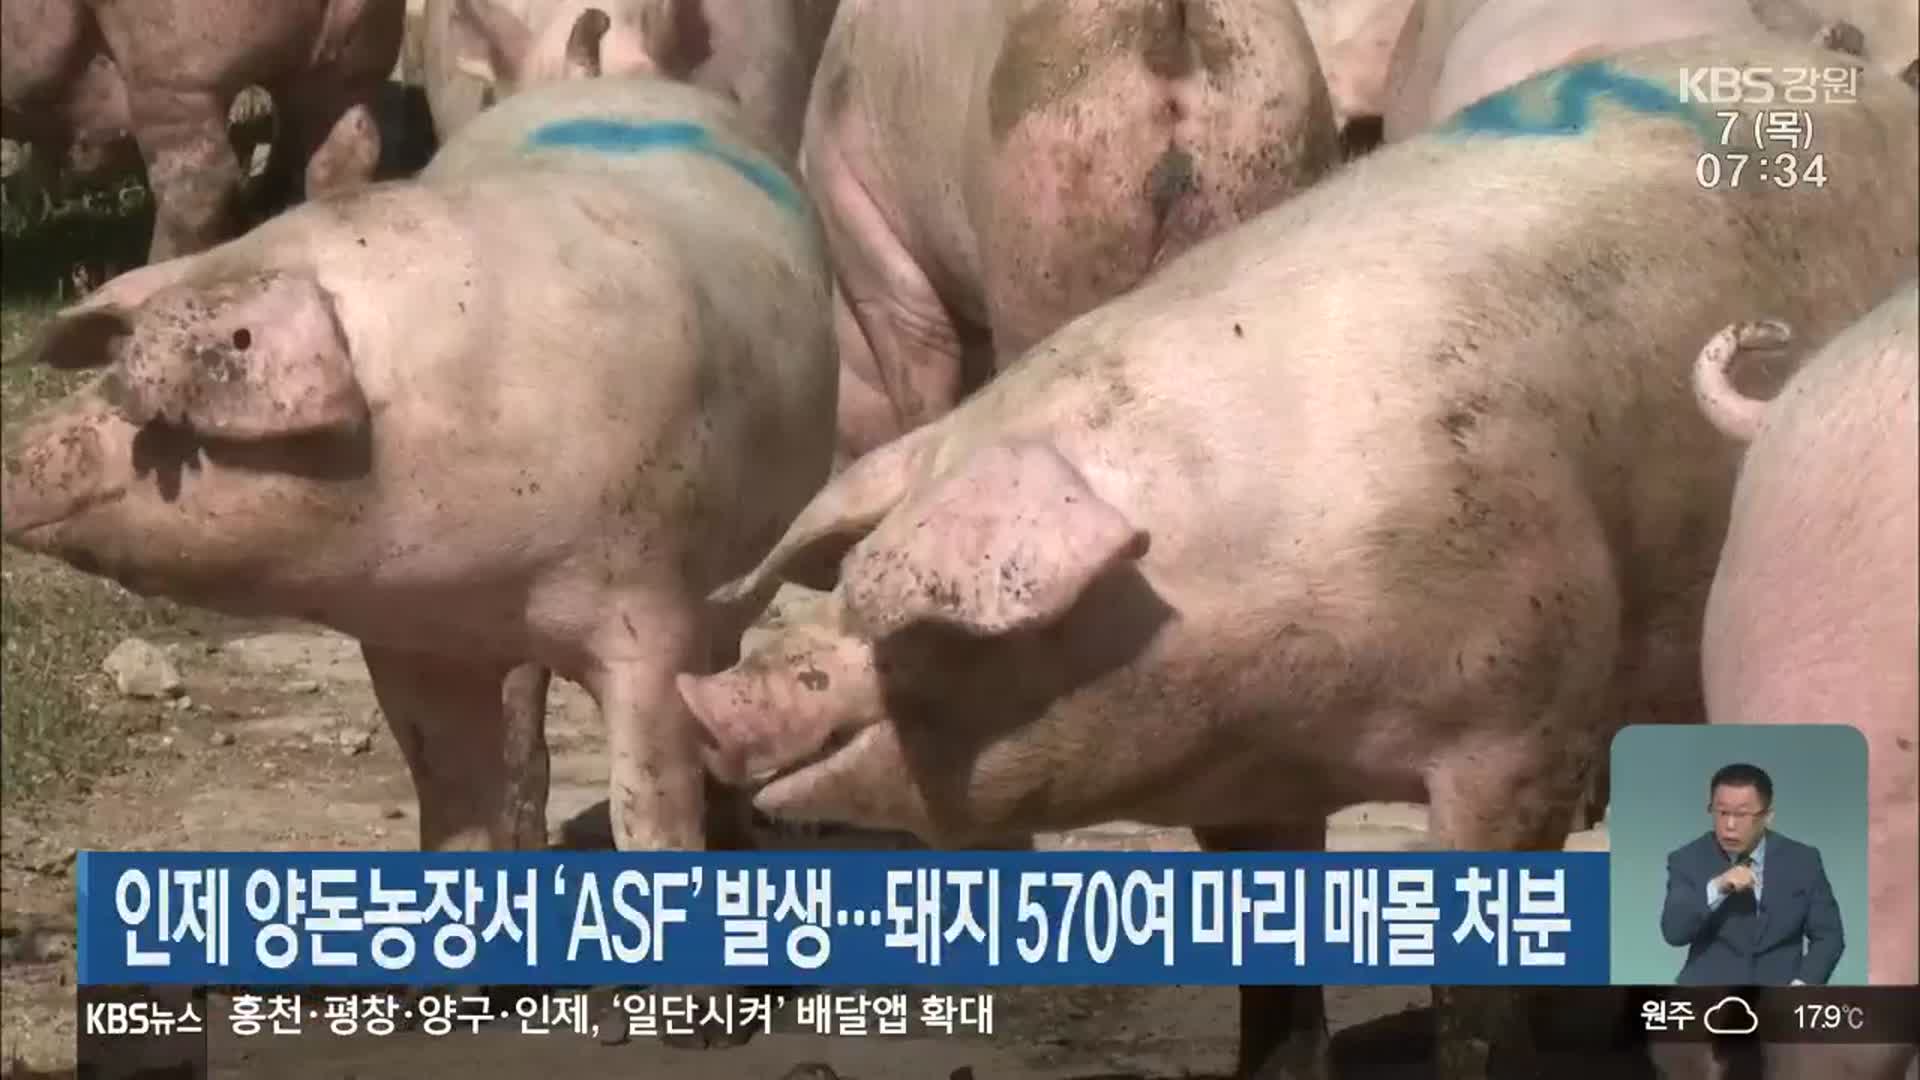 인제 양돈농장서 ‘ASF’ 발생…돼지 570여 마리 매몰 처분